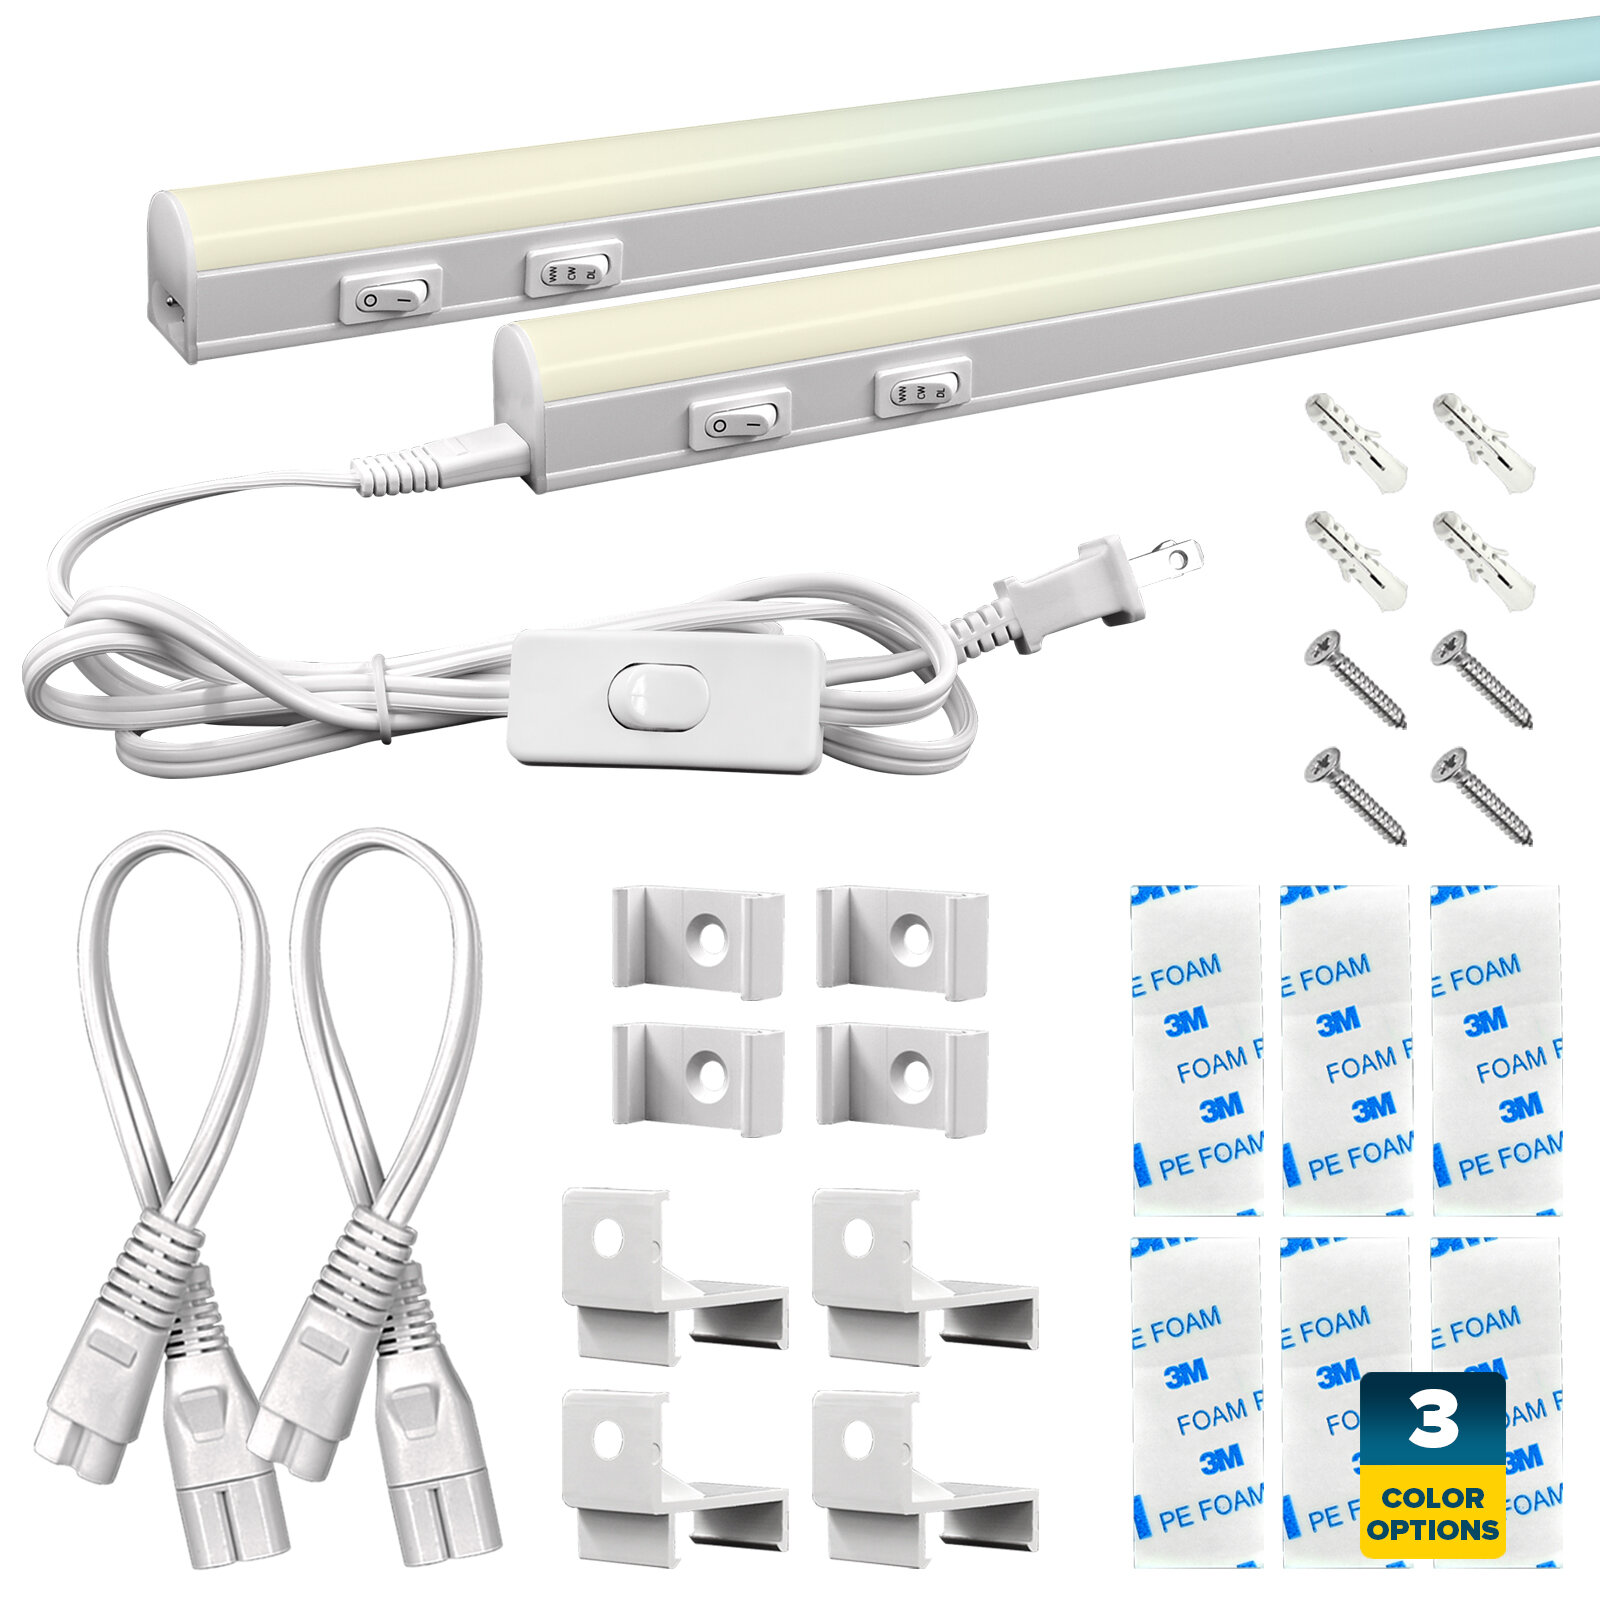 Sunperian LED Under Cabinet Light Kit 12 Plug In 30W Linkable 3 Color  Option 3000K/4000K/5000K Damp Rated - On Sale - Bed Bath & Beyond - 33875048